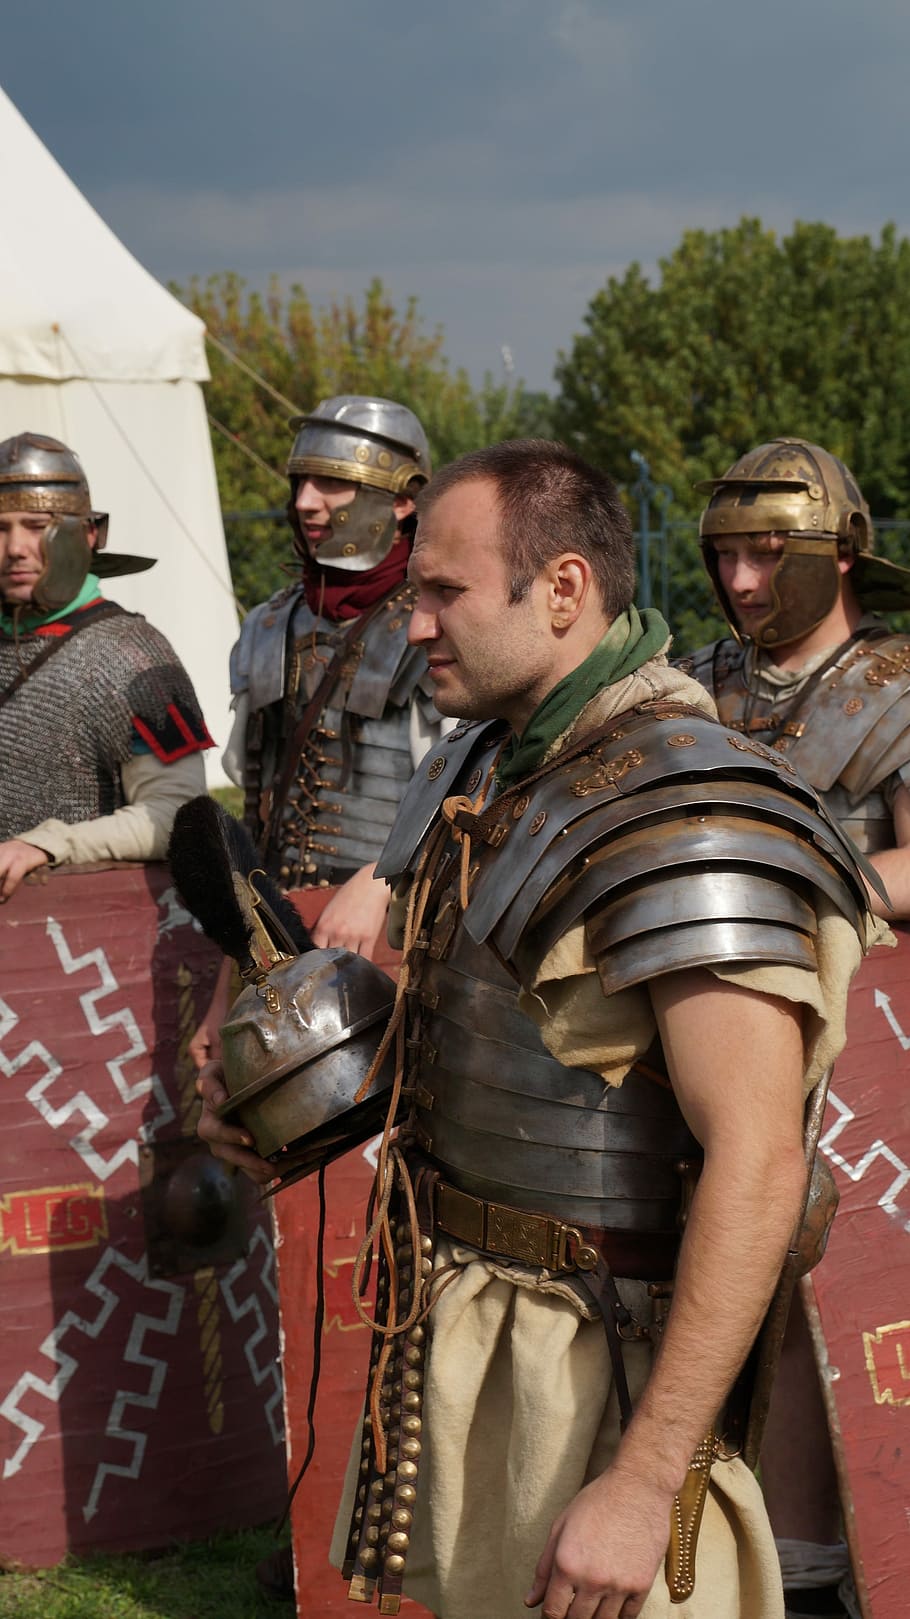 ローマ人, 男, 人, 戦闘機, ローマ軍団, 歴史的再構成, 歴史的出来事, ヘルメット, 立っている, 一体感